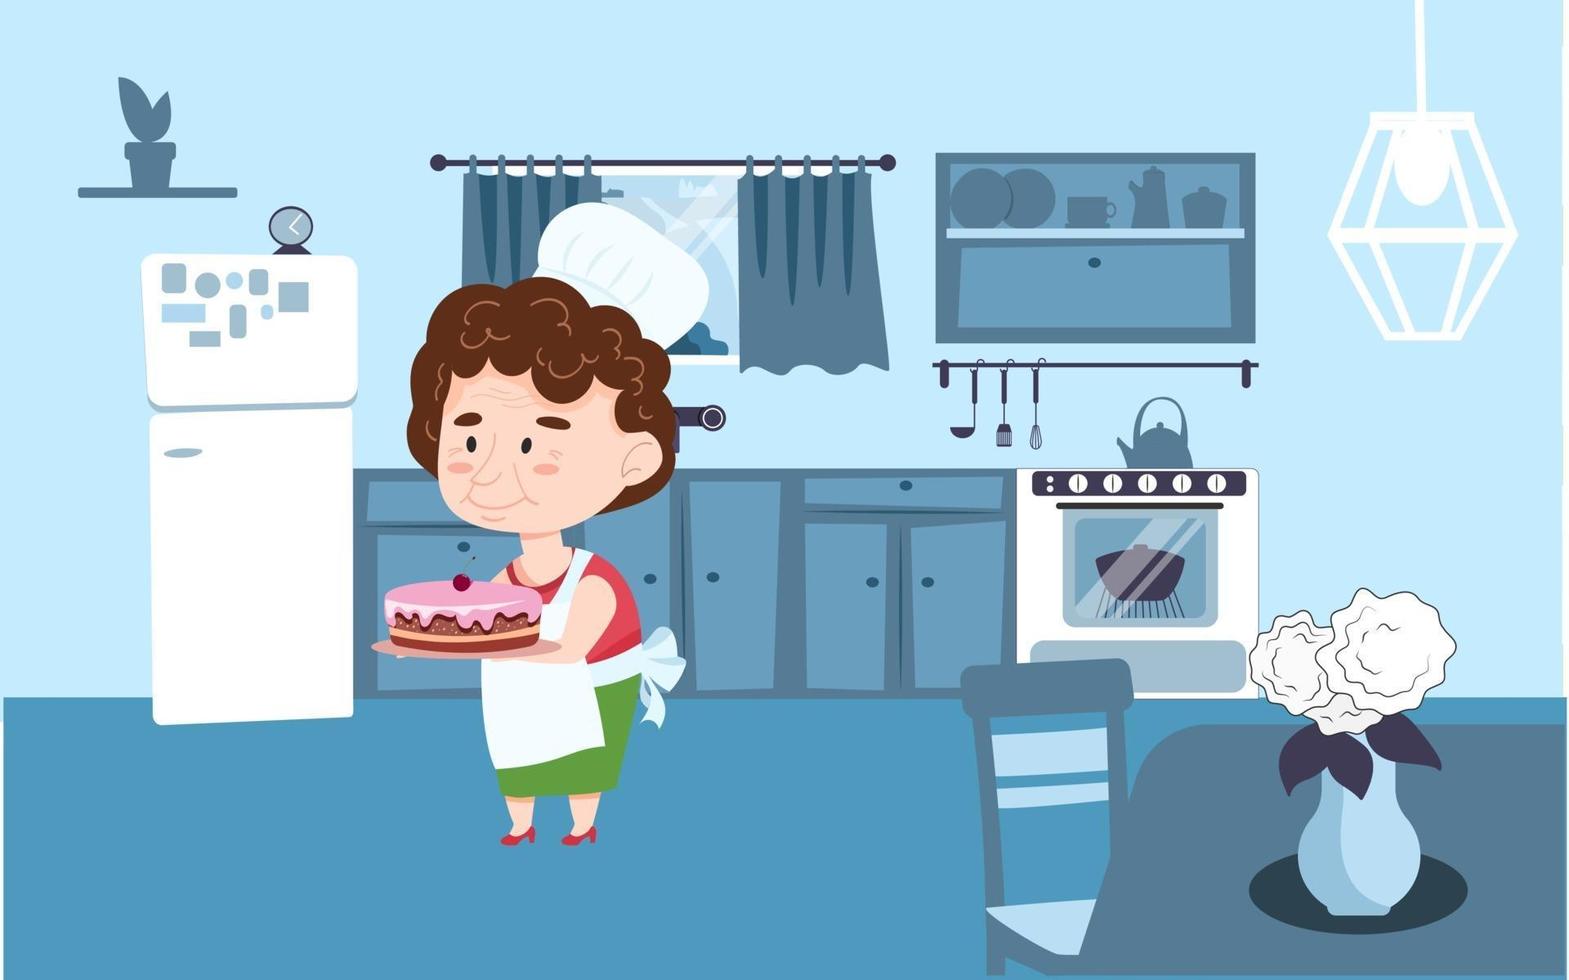 grootmoeder met een culinaire pet staat in de keuken en heeft een taart in haar handen. vectorillustratie in cartoon stijl vector